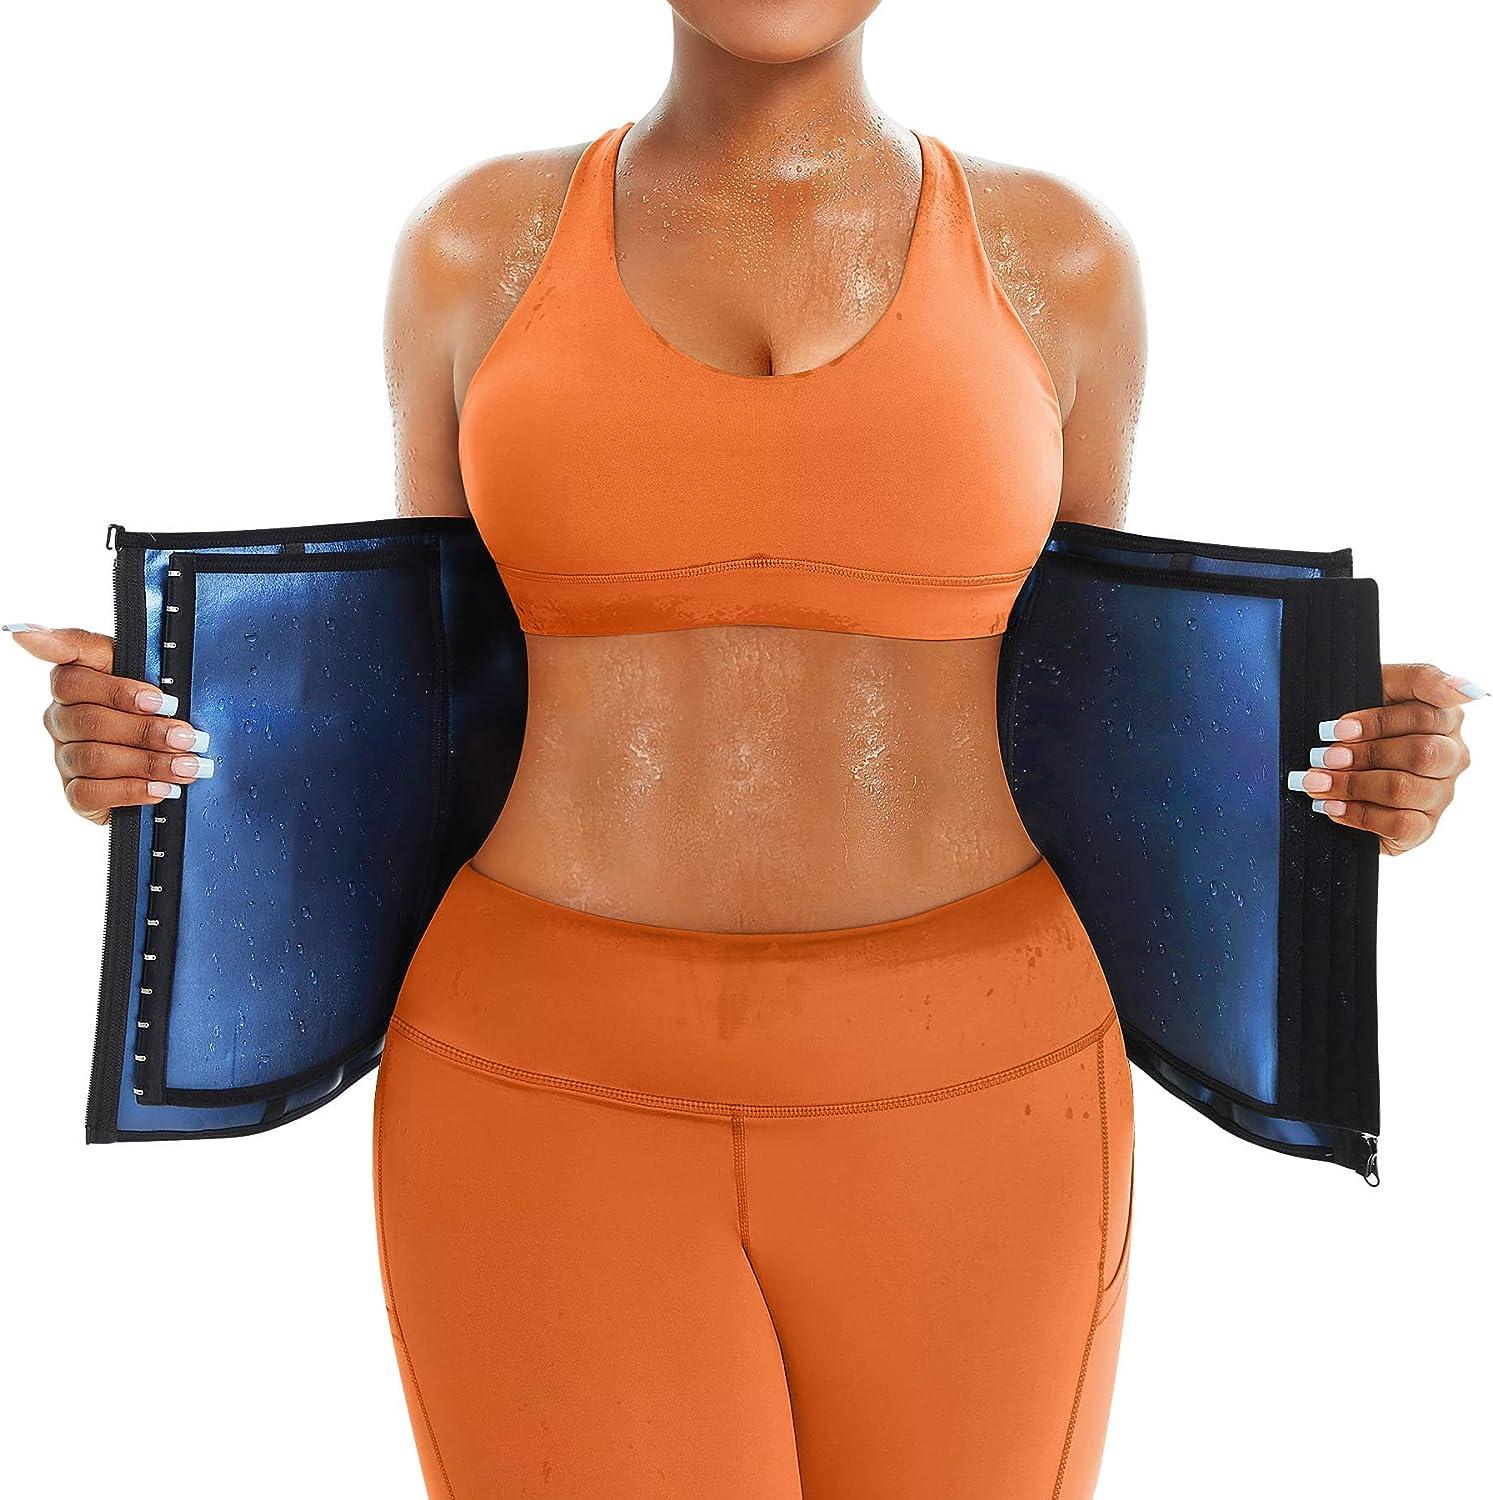 Generic Women &Men Waist Trainer Belt Tummy Control Waist Cincher Trimmer  Sauna Sweat Workout Girdle Slim Belly Band Sport Girdle @ Best Price Online